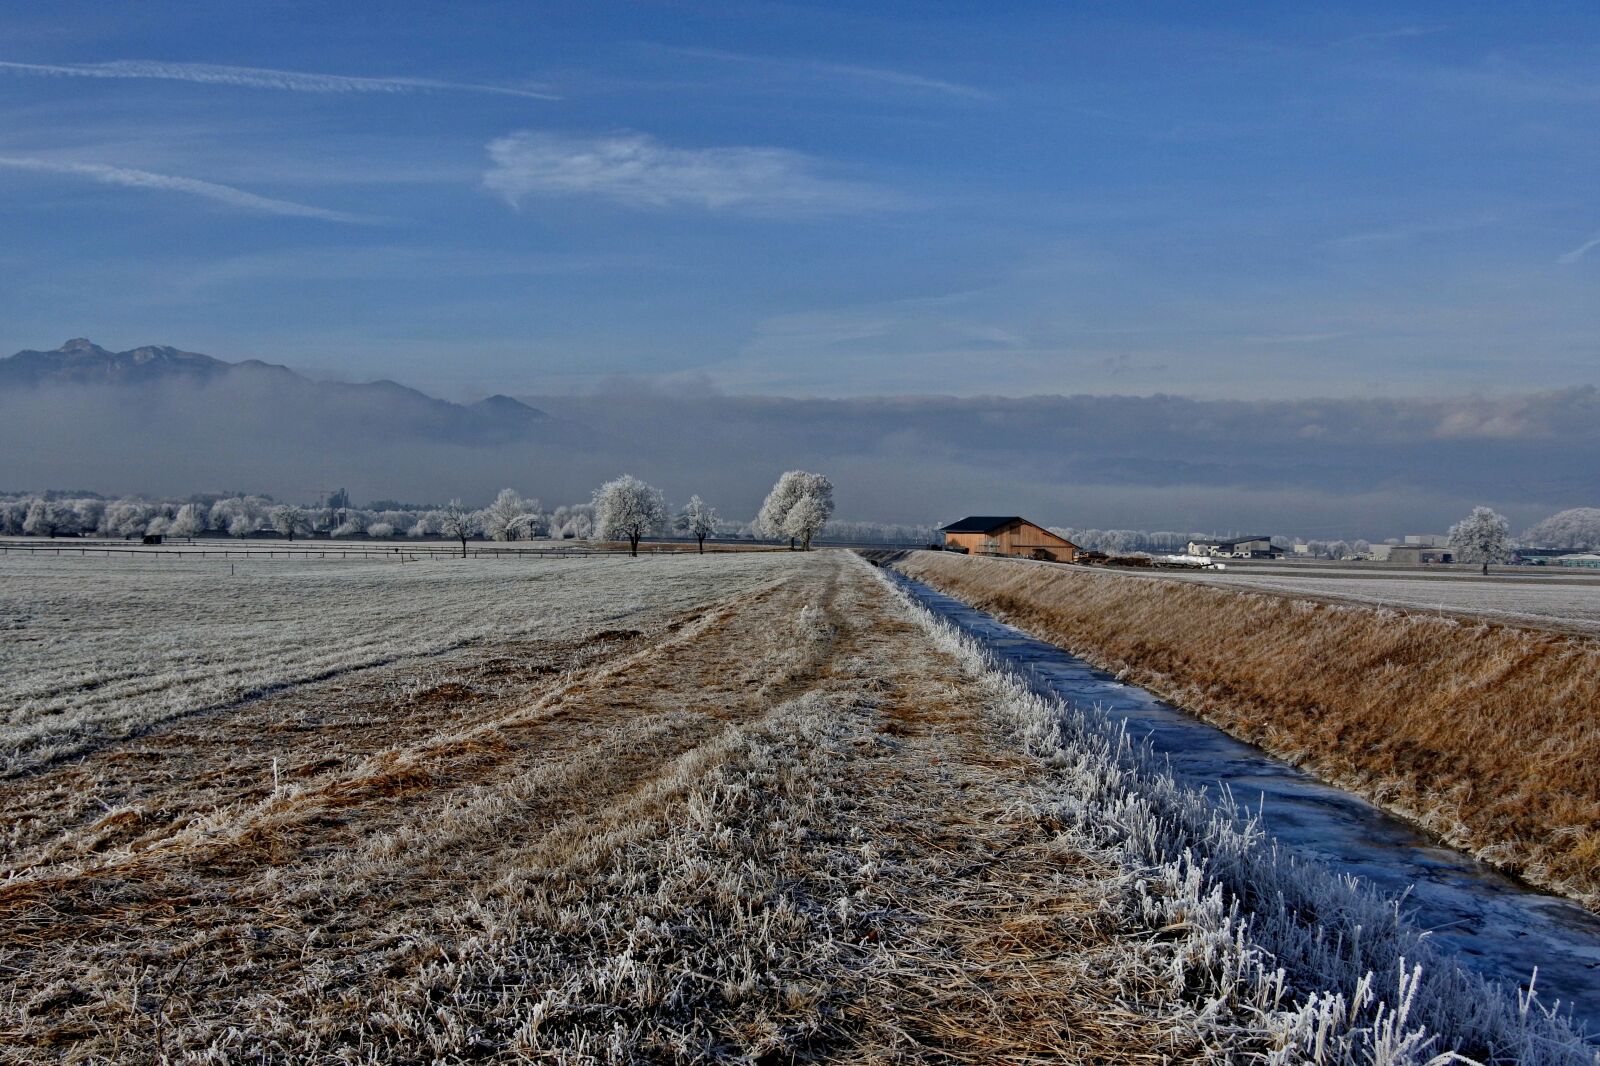 1 NIKKOR VR 10-100mm f/4-5.6 sample photo. Landscape, frost, cold photography